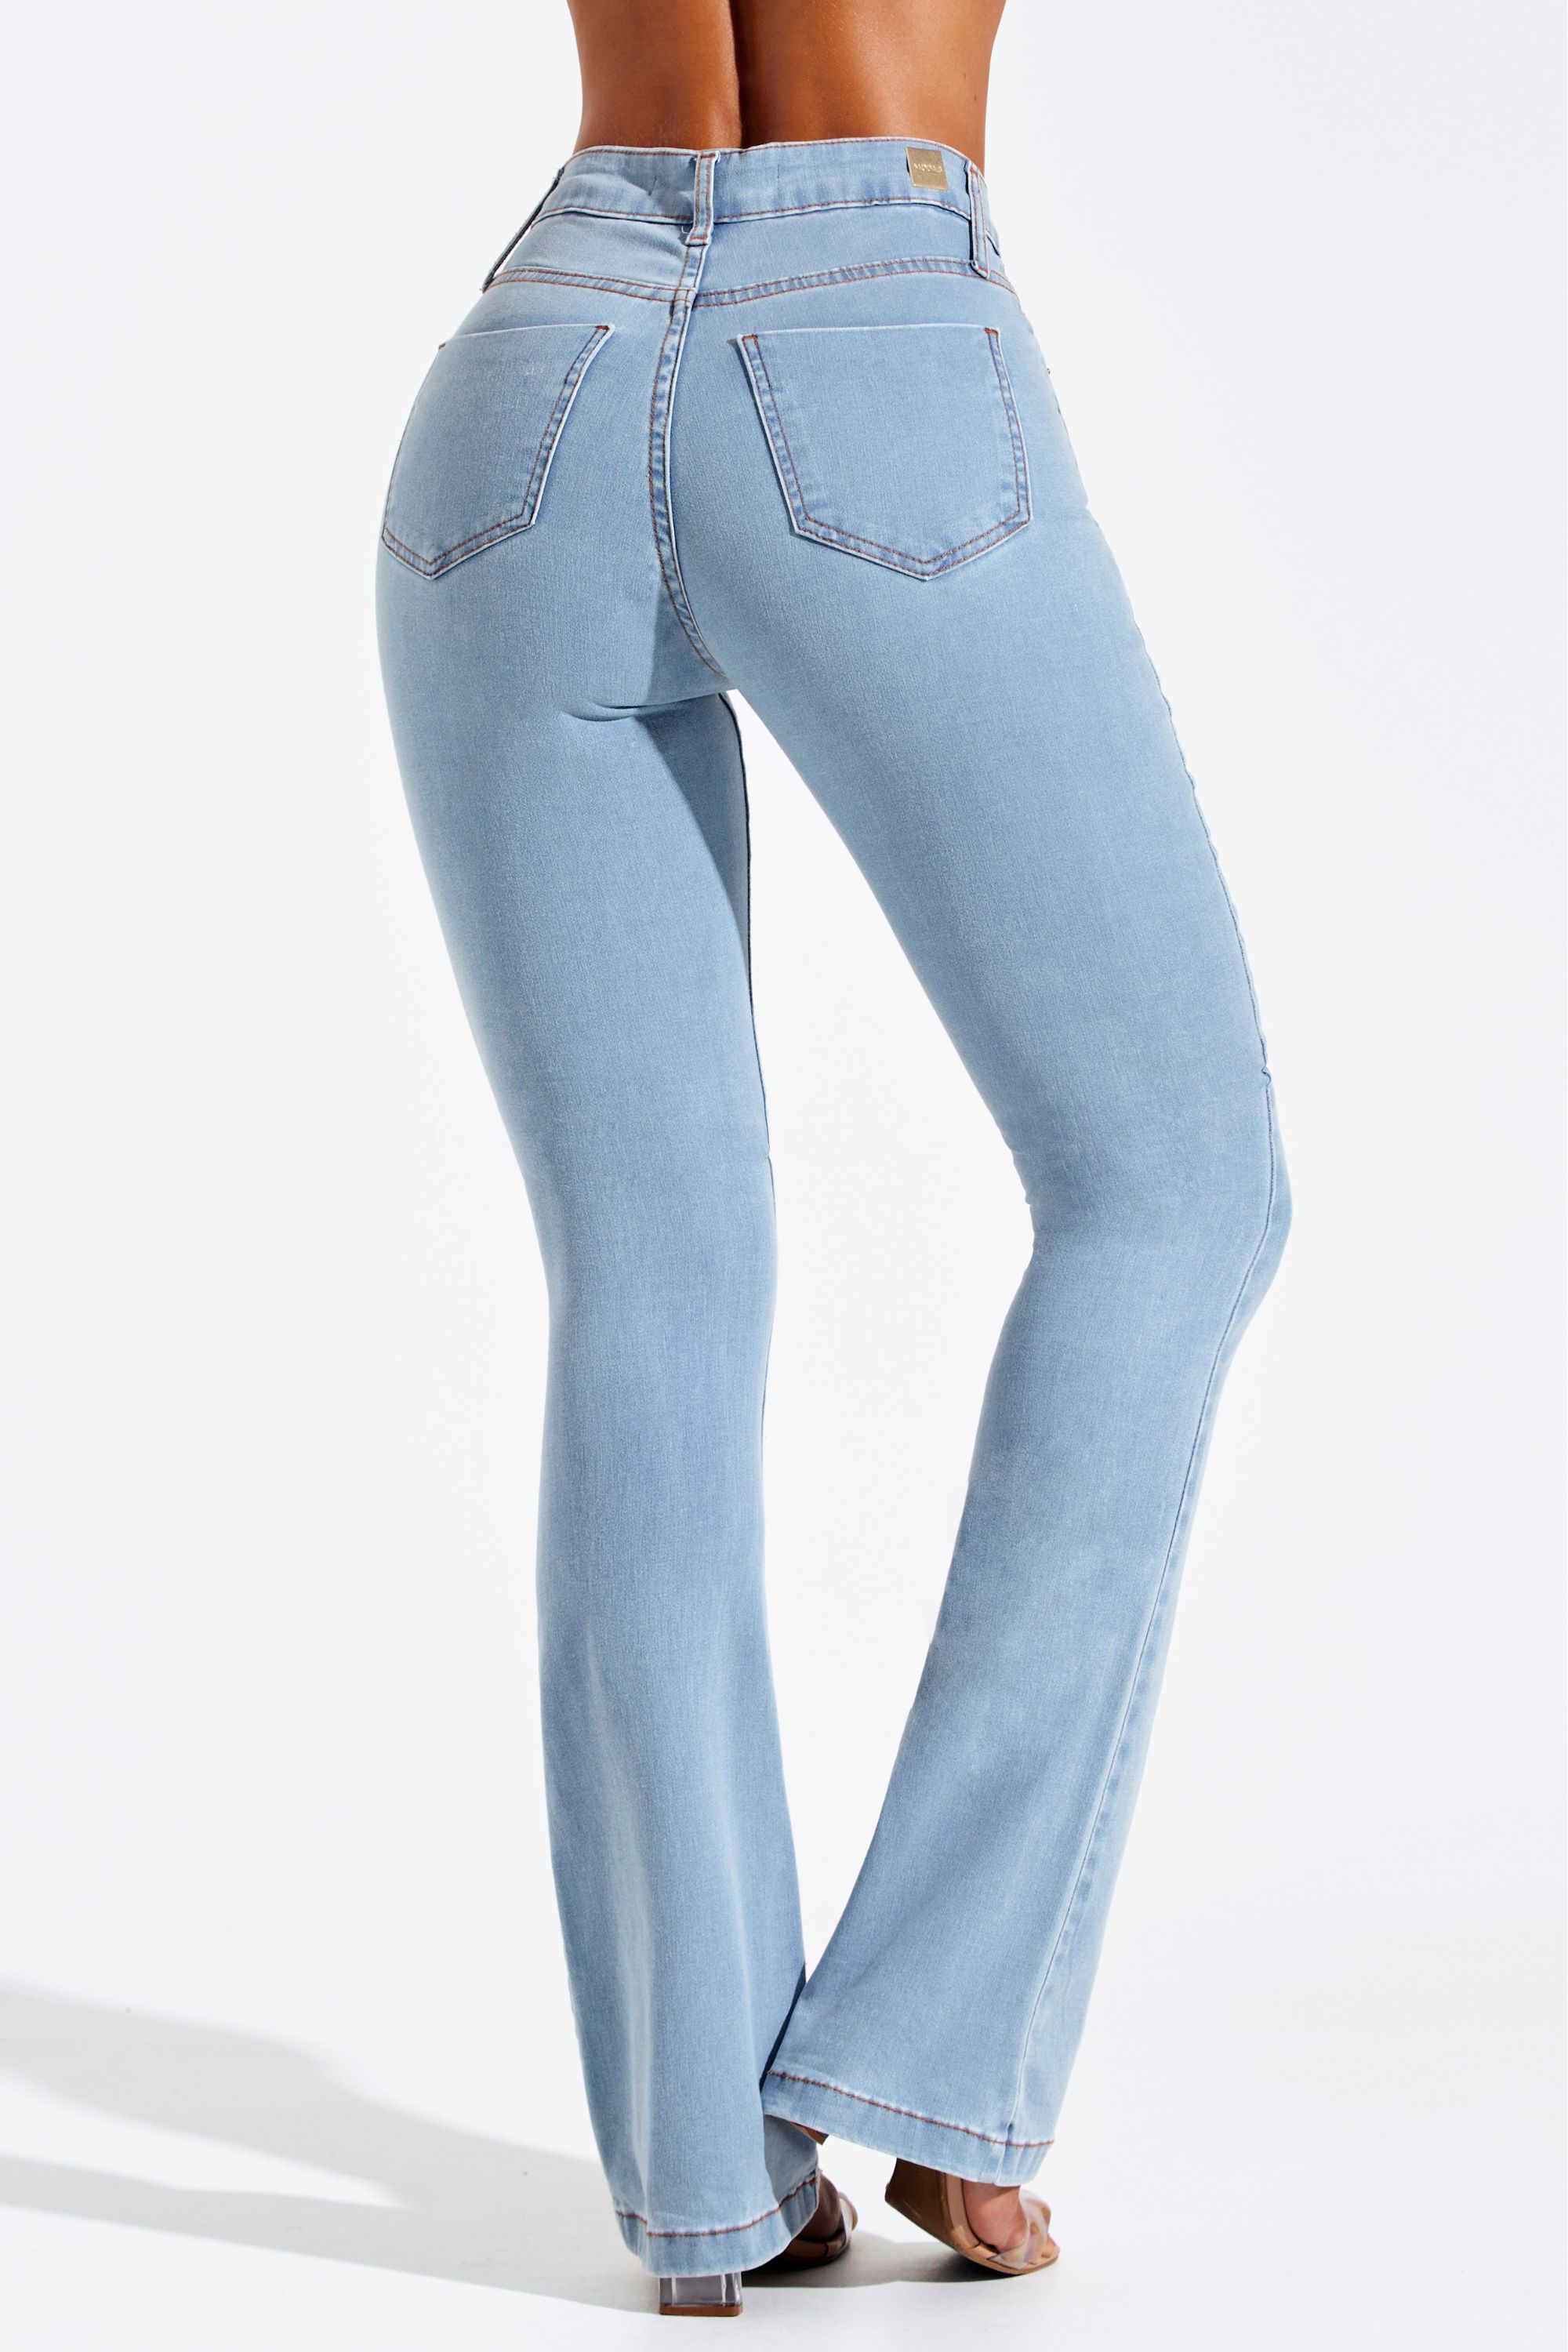 Calça Jeans Modeladora Clara Super Alta